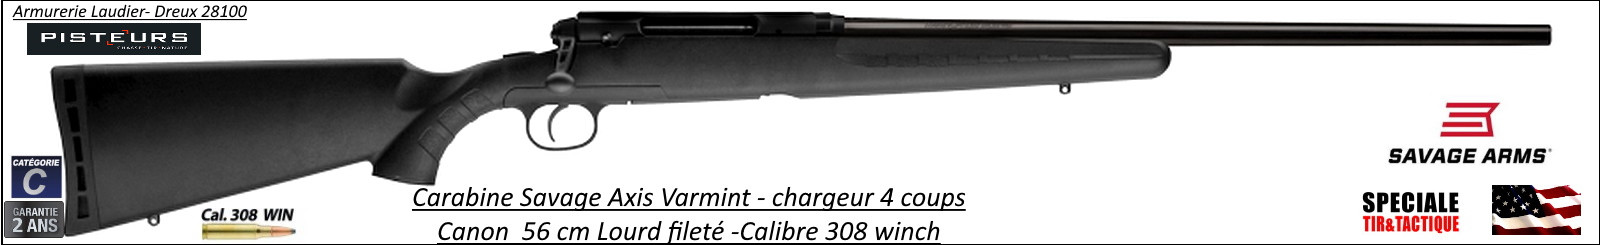 Carabine Savage Axis Varmint Calibre 308 winch Répétition Canon lourd fileté-Promotion-Ref 780560